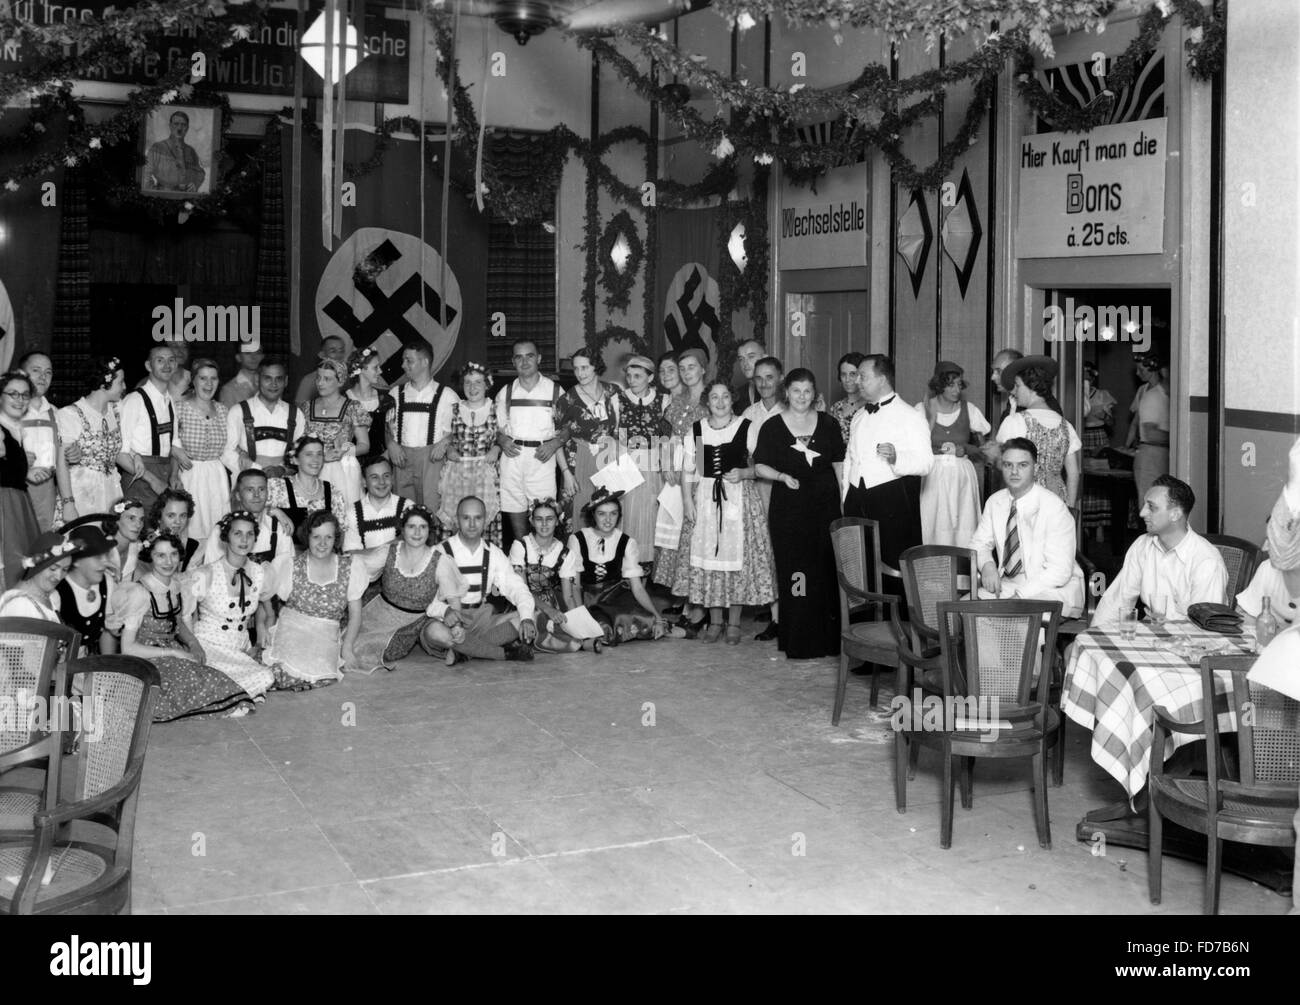 Association allemande dans les Indes orientales néerlandaises, 1930 Banque D'Images